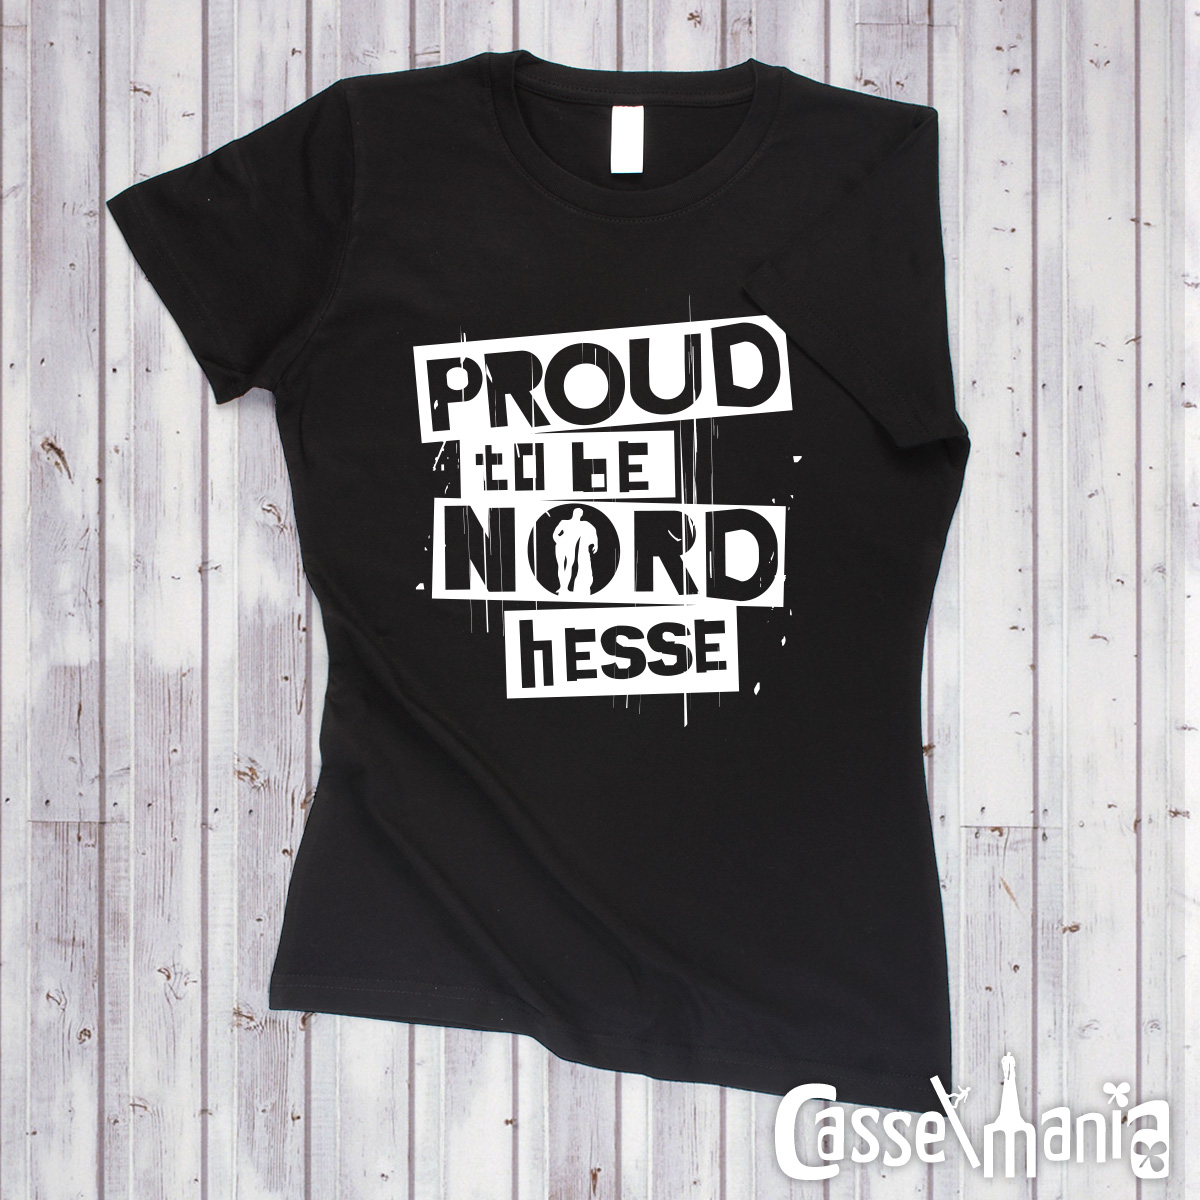 Proud to be Nordhesse - Women